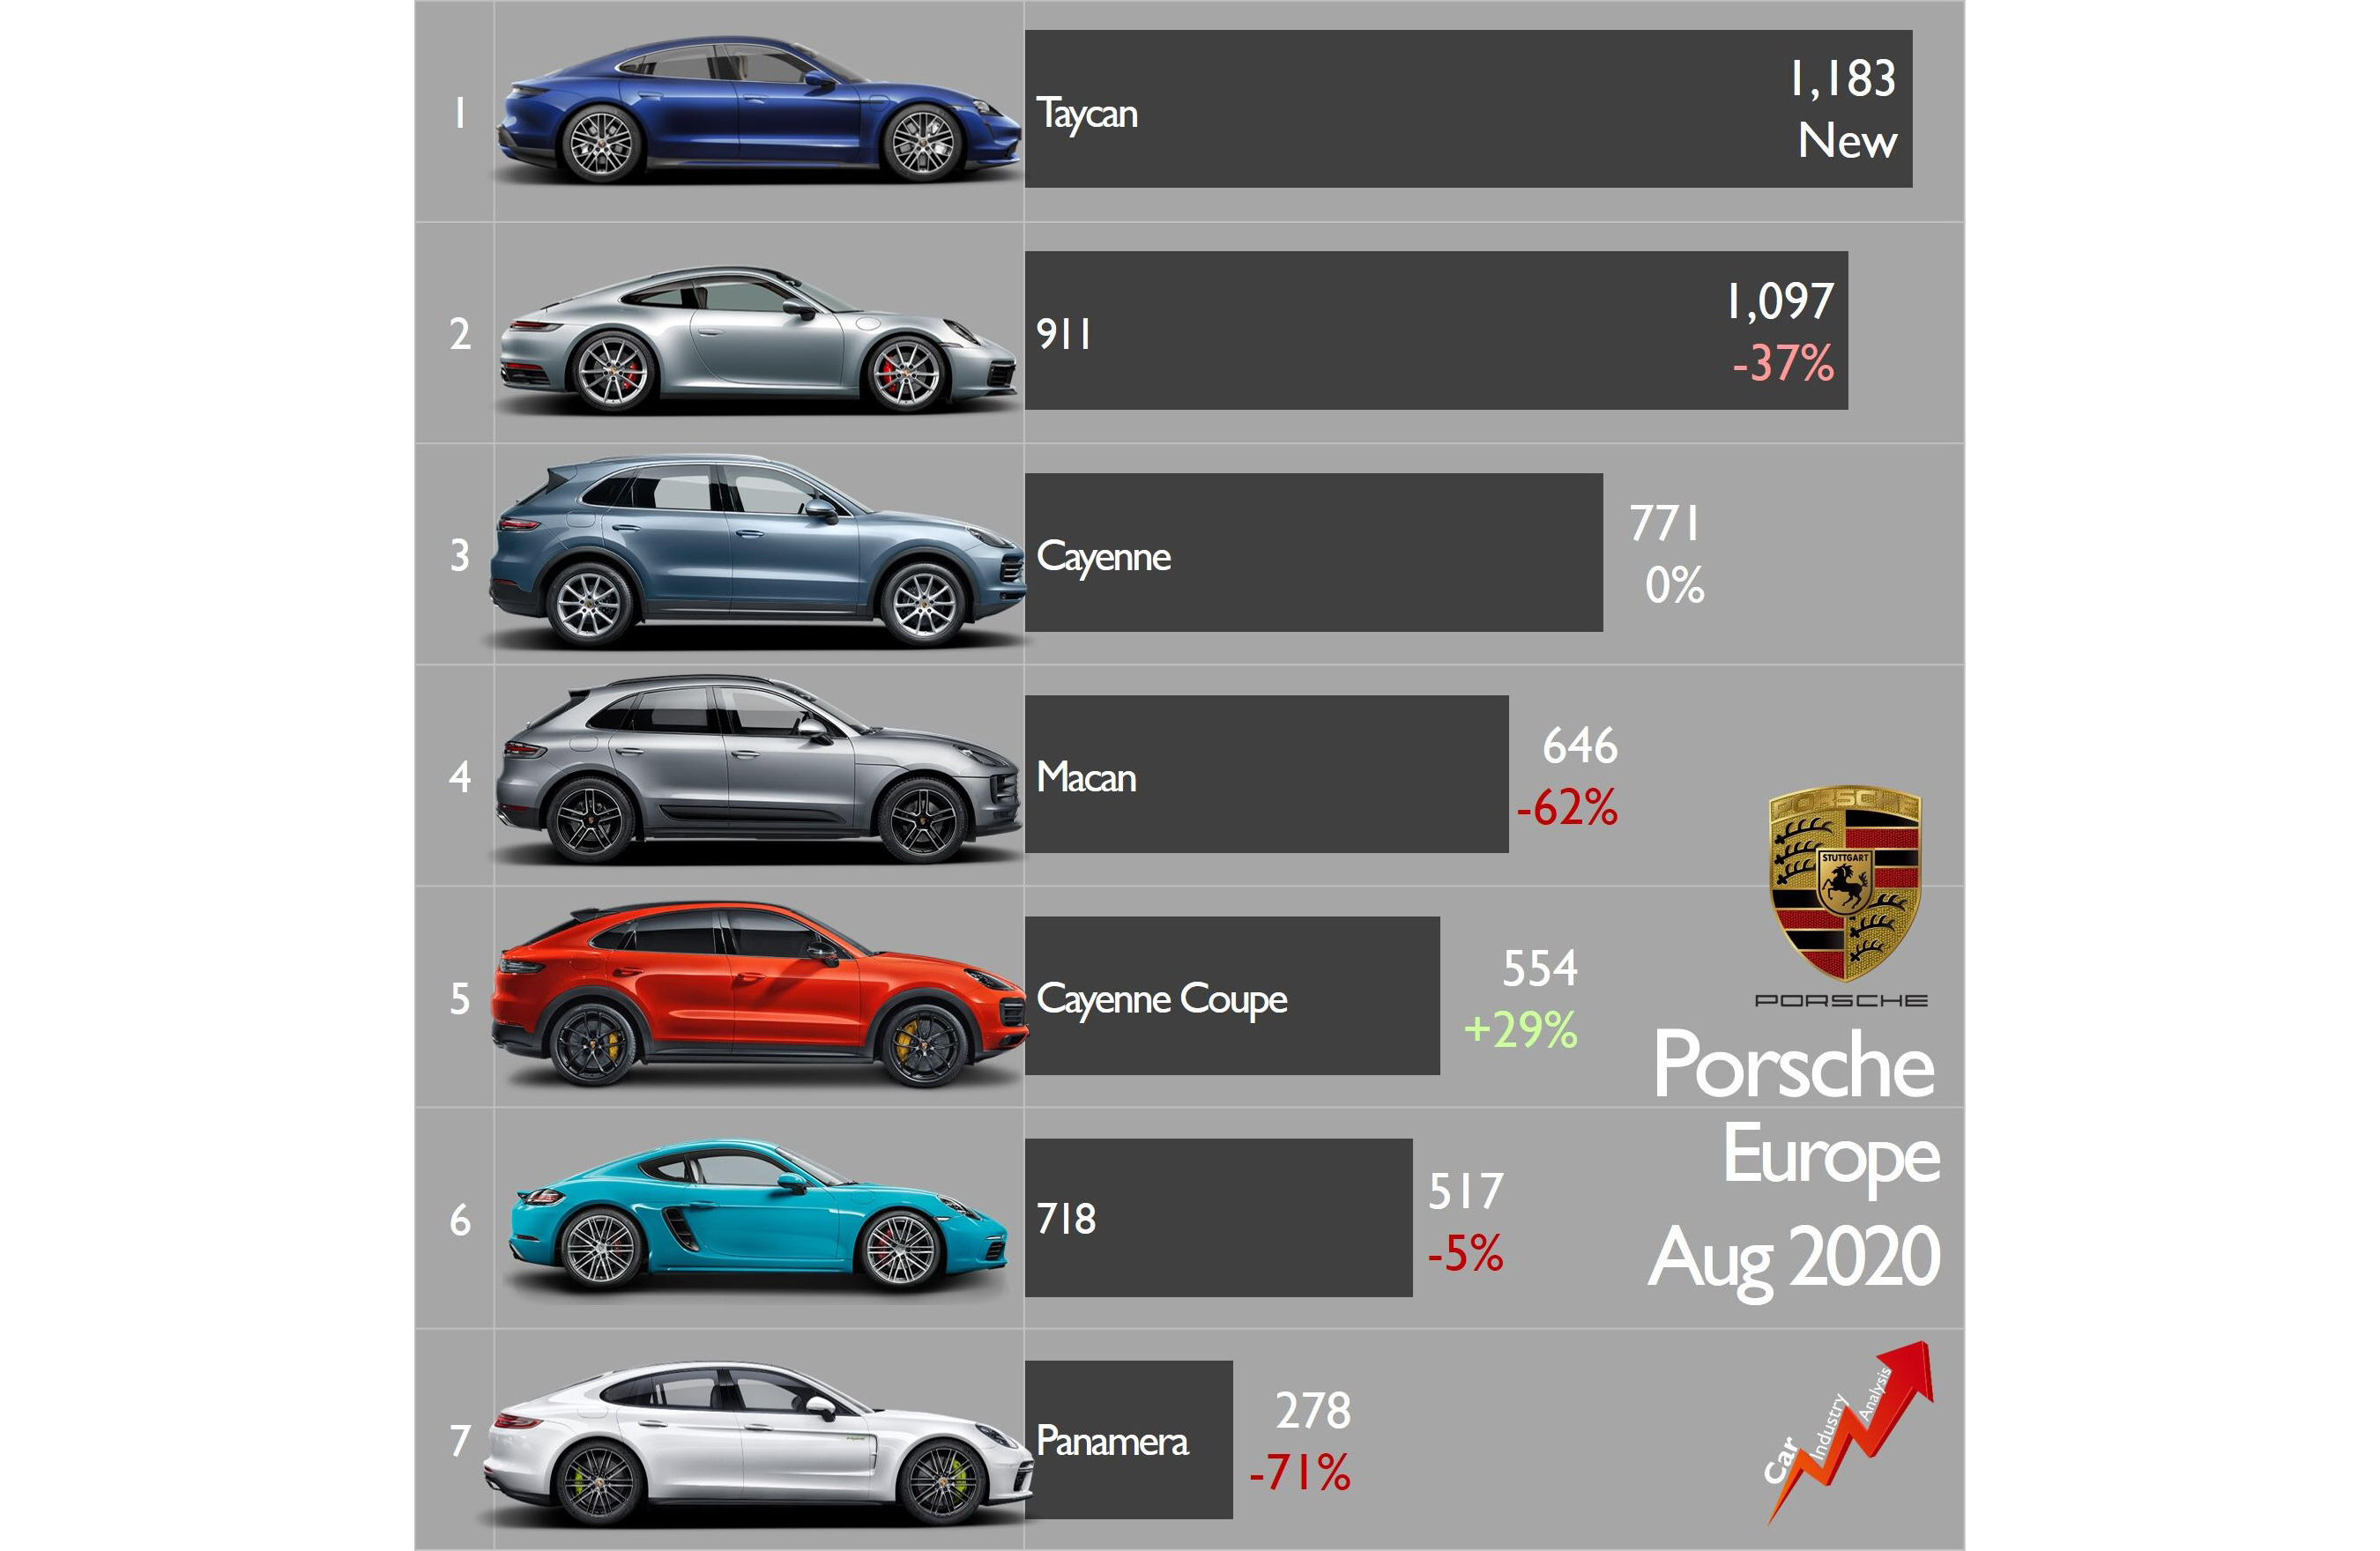 Taycan Smashes Porsche Sales Records In Europe Last Month Porsche Taycan Forum Taycanforum Com